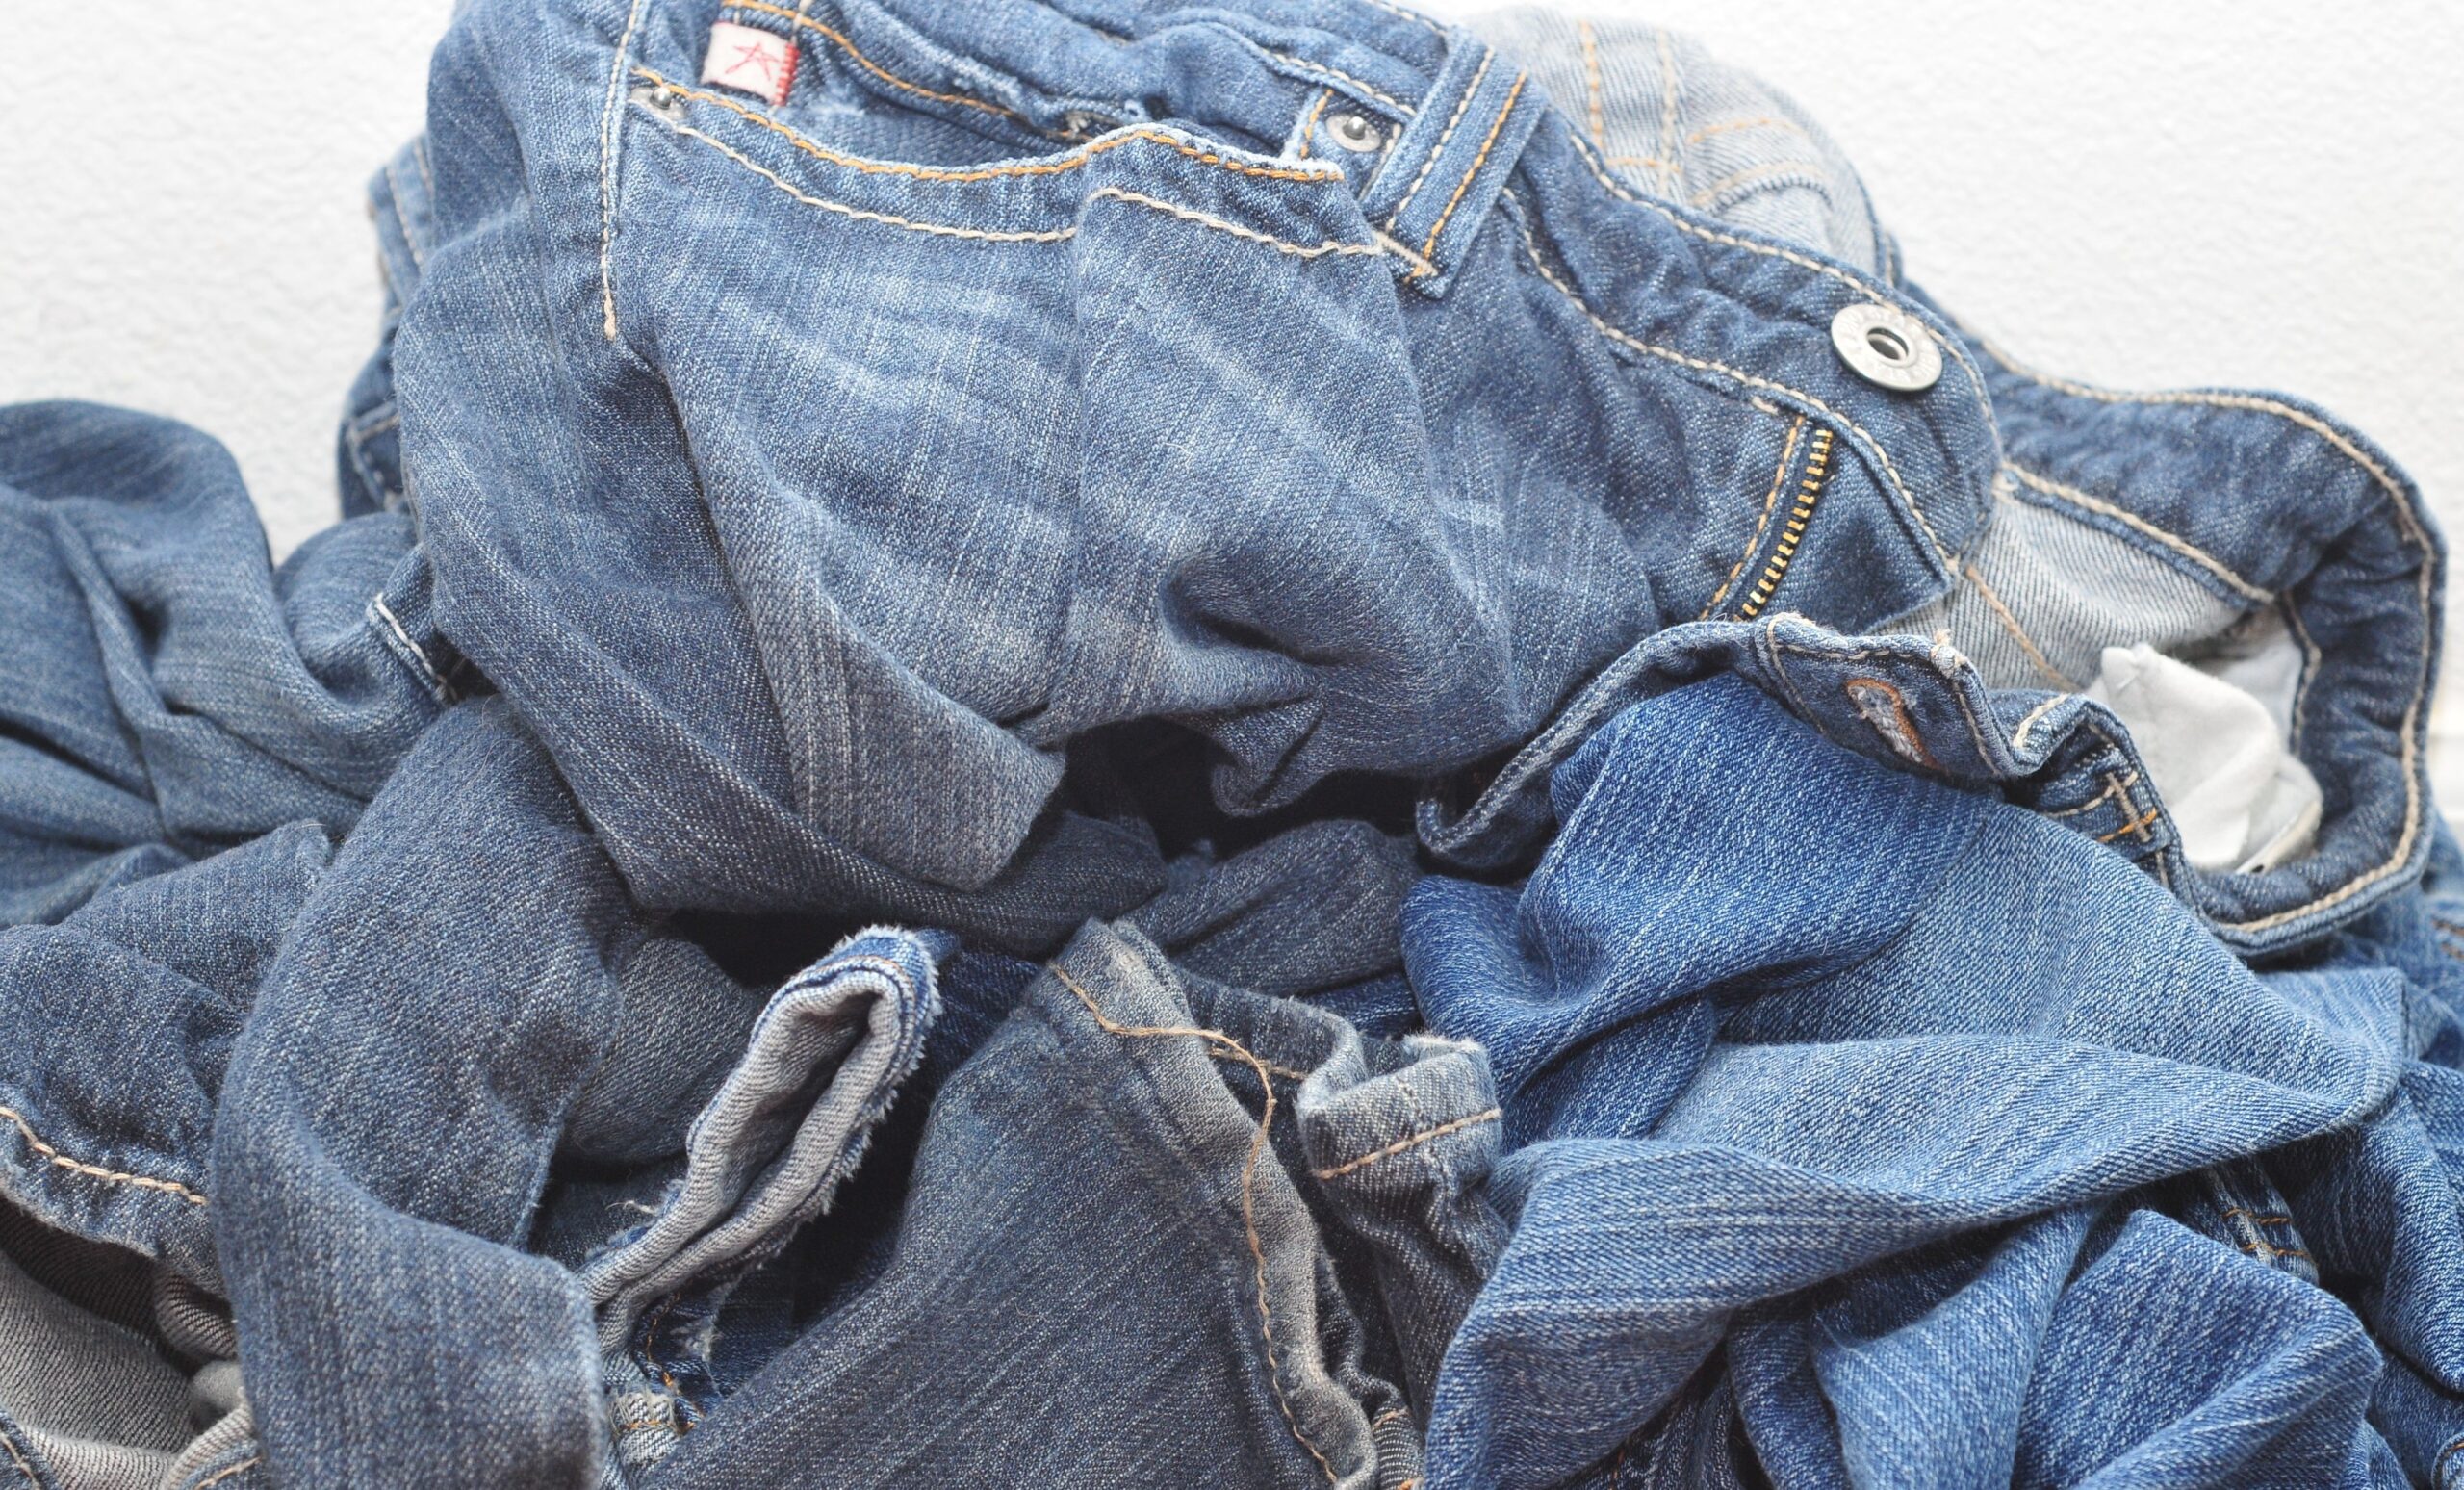 Idee creative per riciclare i vecchi jeans